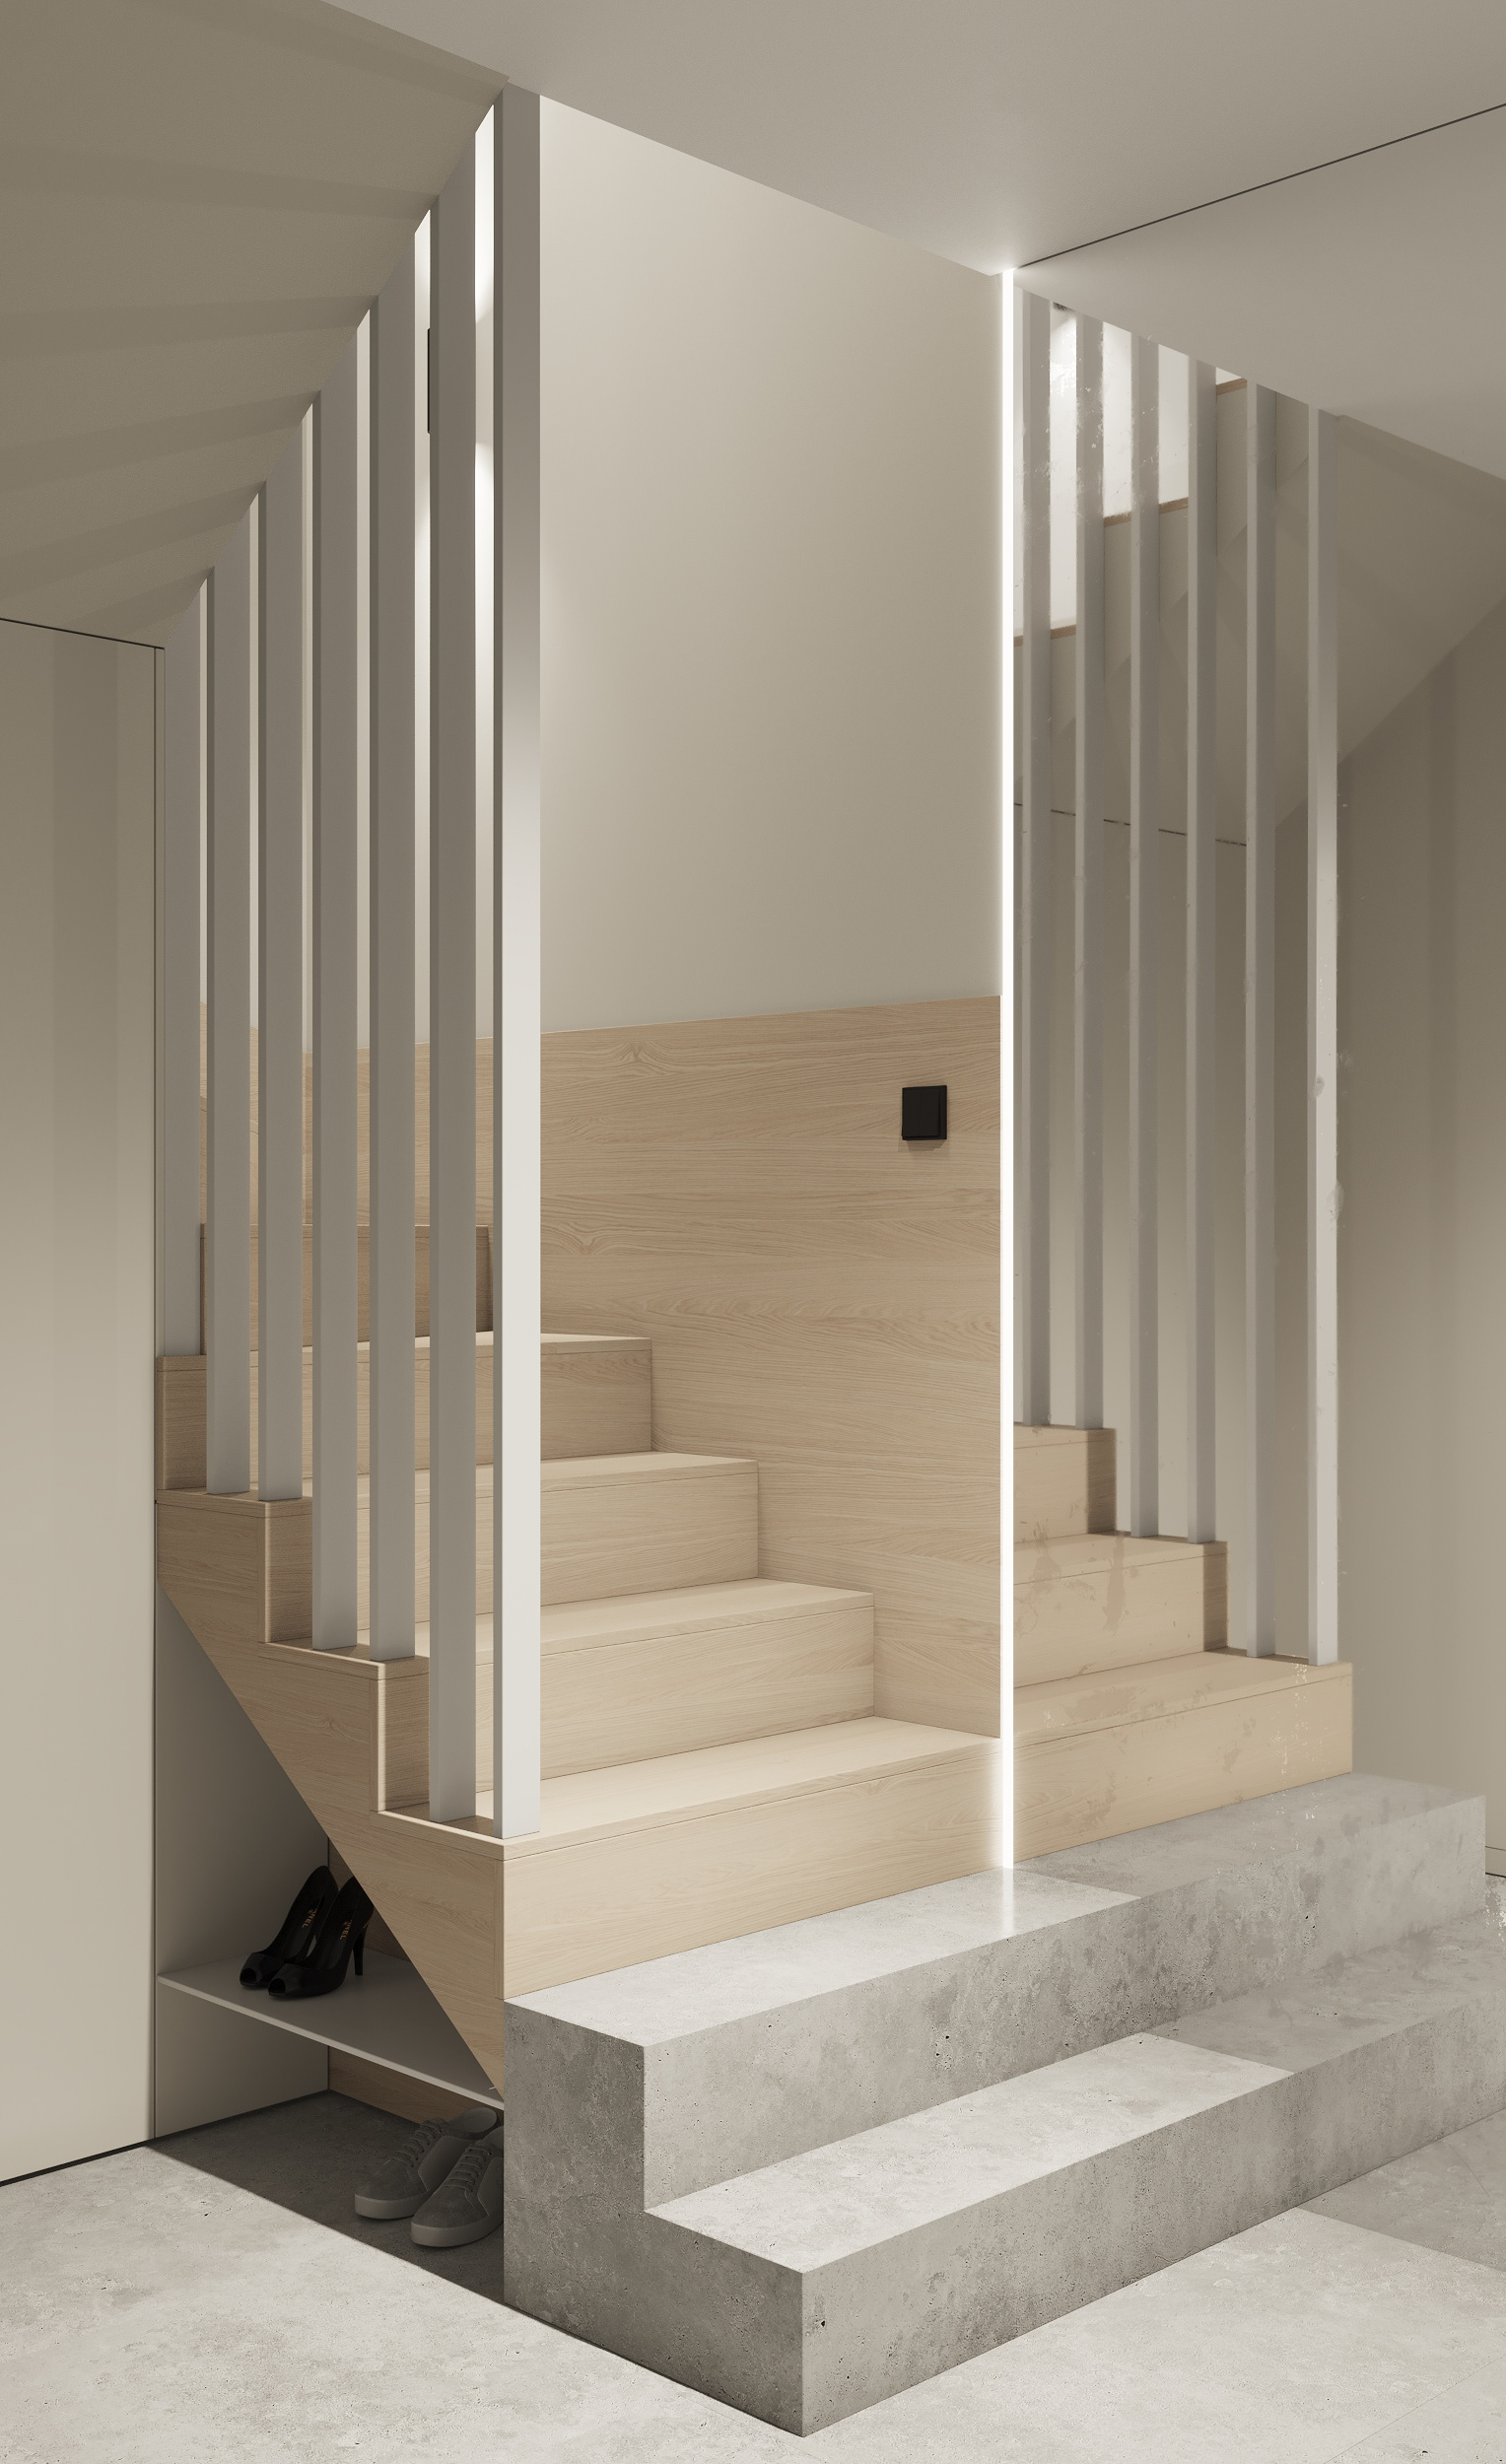 OD design studio heeft dit trapontwerp gerealiseerd met twee treden van marmer, die een super mooie combinatie vormt met hout.